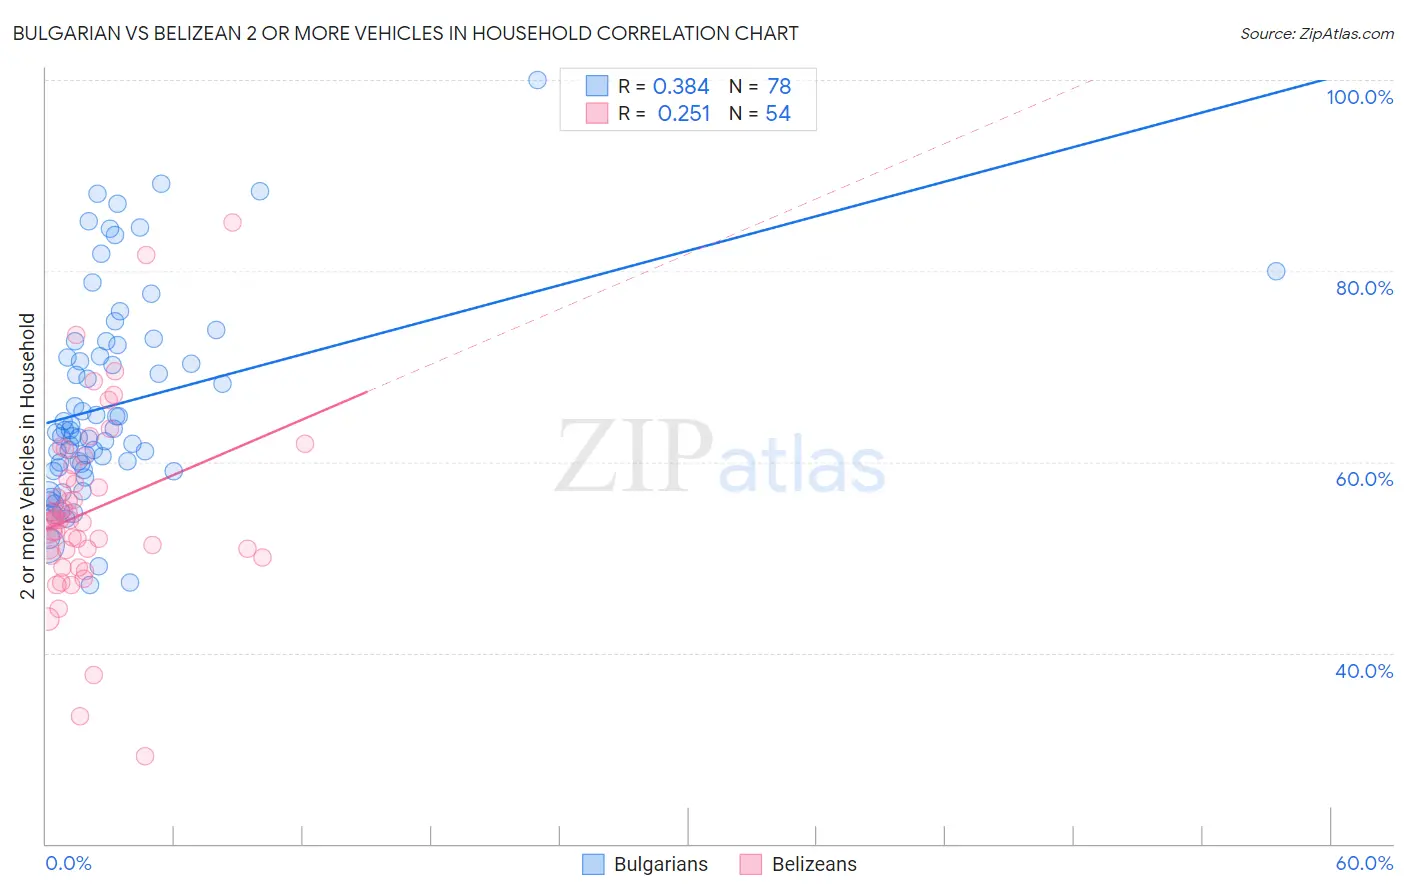 Bulgarian vs Belizean 2 or more Vehicles in Household